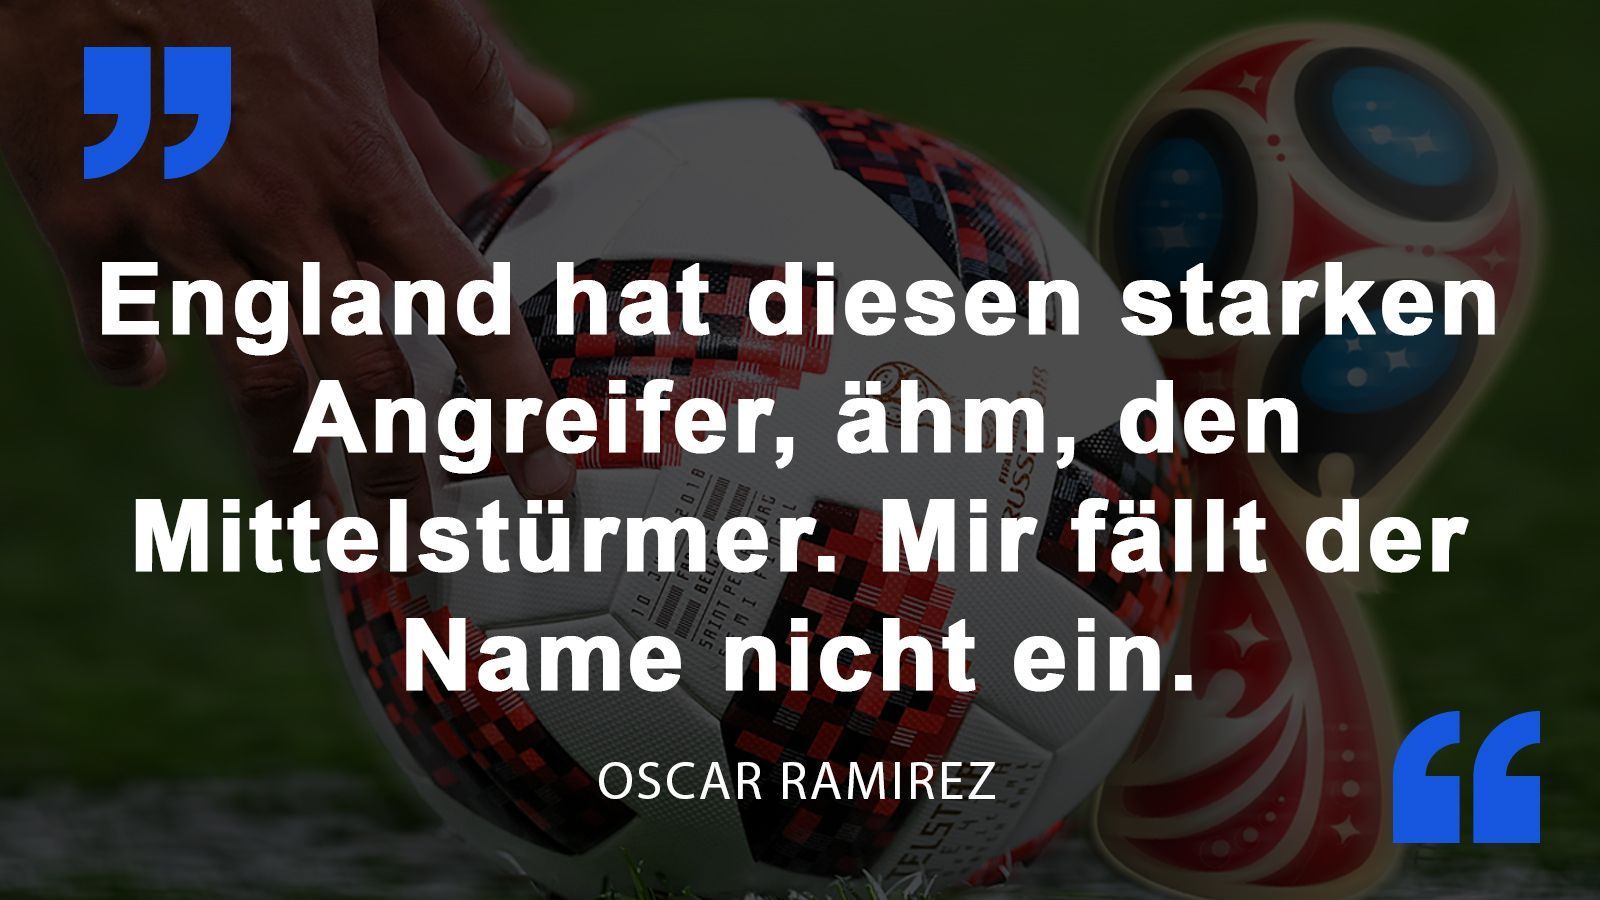 
                <strong>Oscar Ramirez</strong><br>
                Der Nationaltrainer Costa Ricas äußerte sich zwei Tage vor dem WM-Start über England.
              